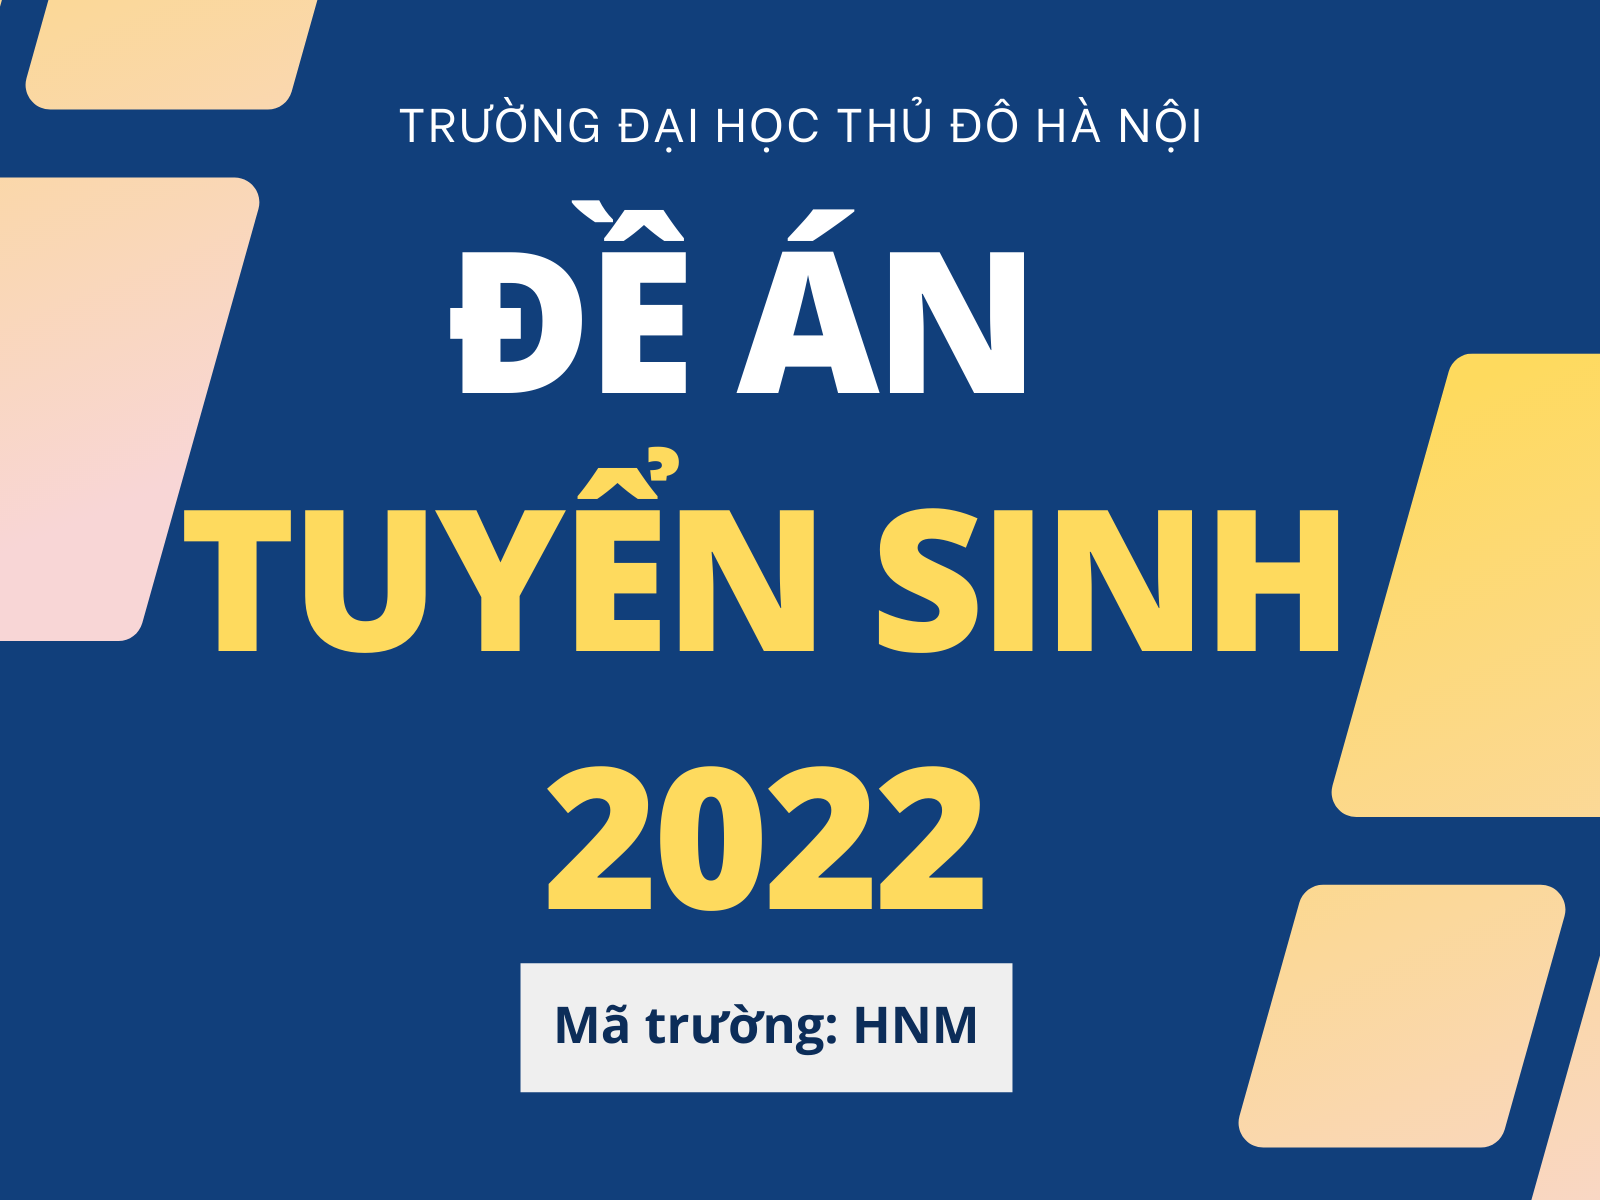 Trường Đại học Thủ đô Hà Nội công bố Đề án tuyển sinh năm 2022 (ban hành lần 2)